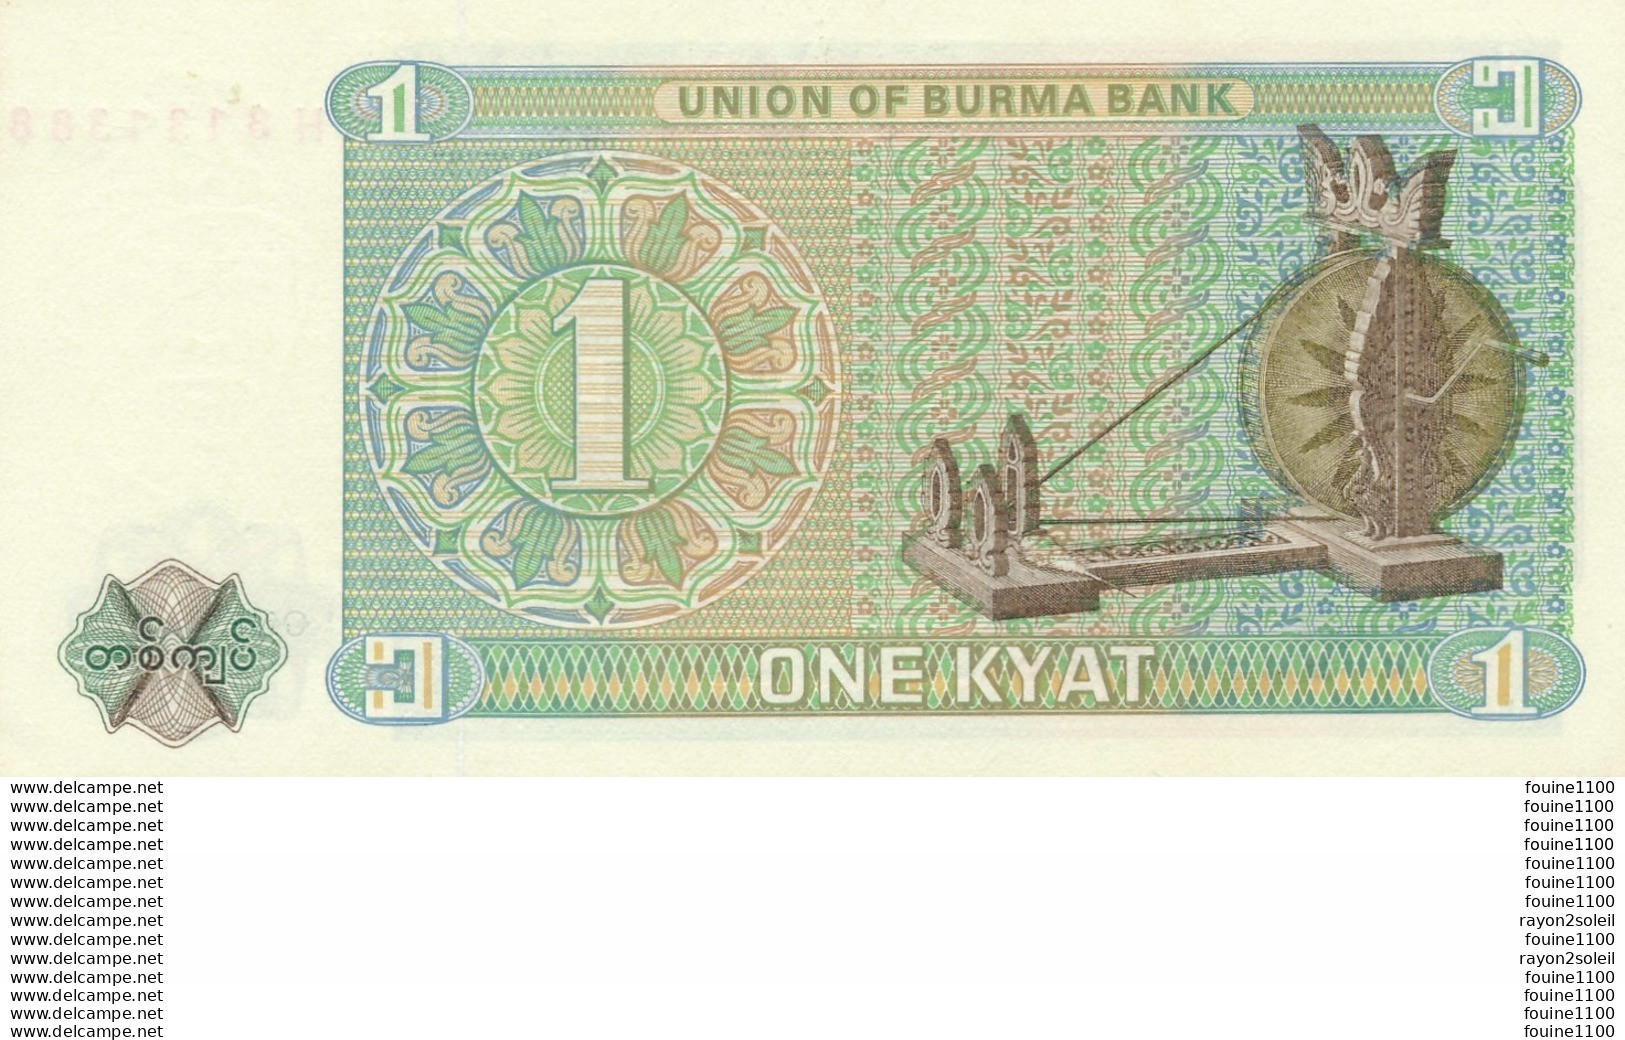 Billet De Banque Myanmar 1  Kyat - Myanmar